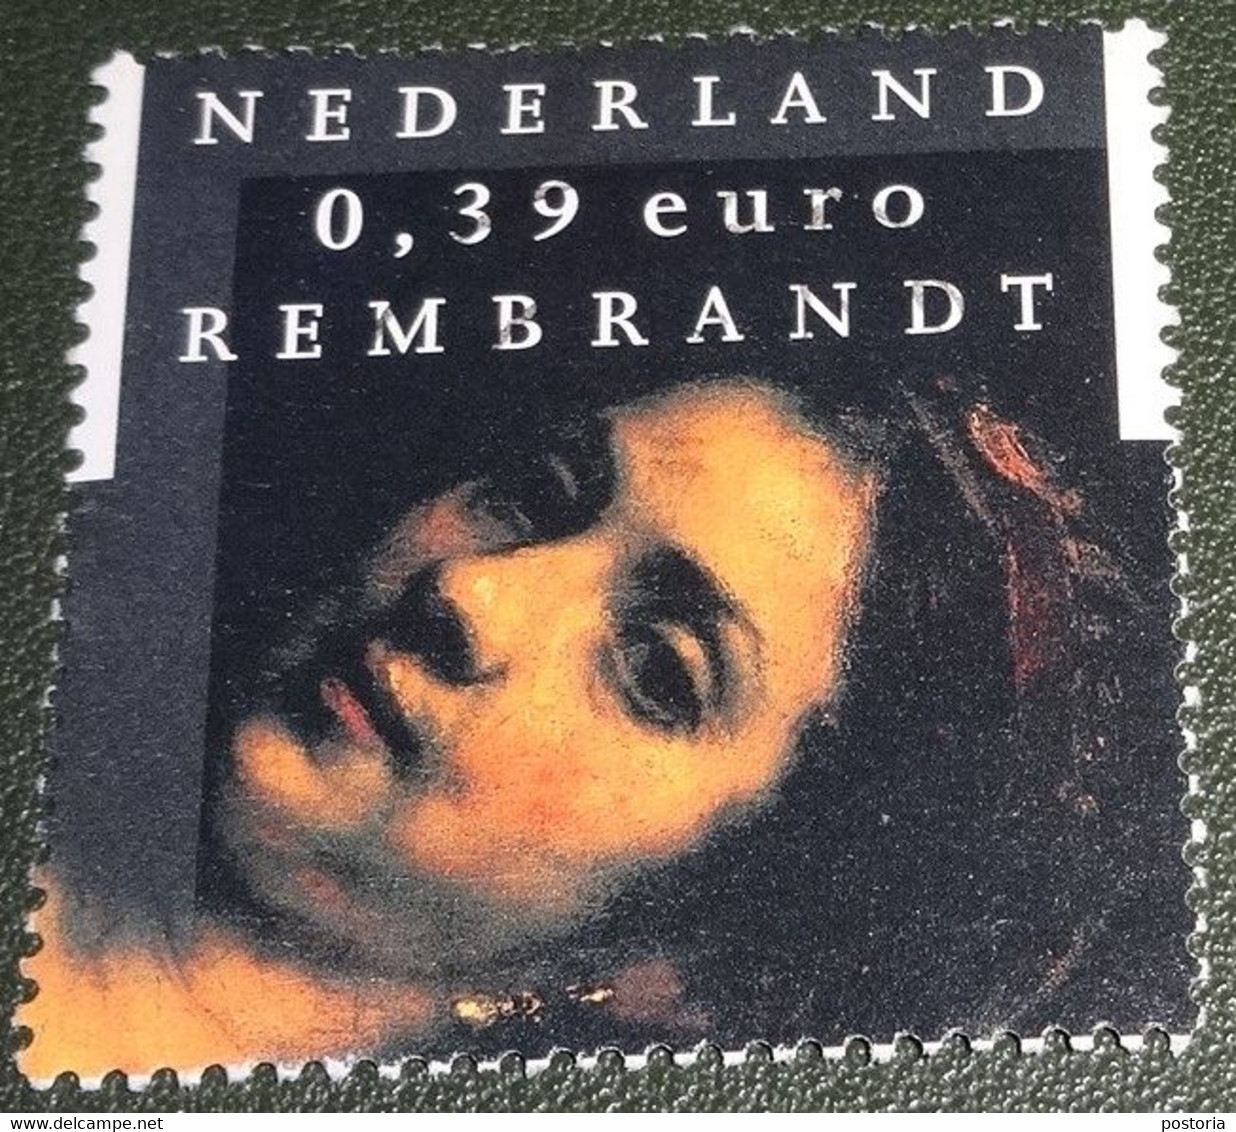 Nederland - NVPH - 2433 - 2006 - Gebruikt - Cancelled - Rembrandt - Vrouw In Deuropening - Gebruikt